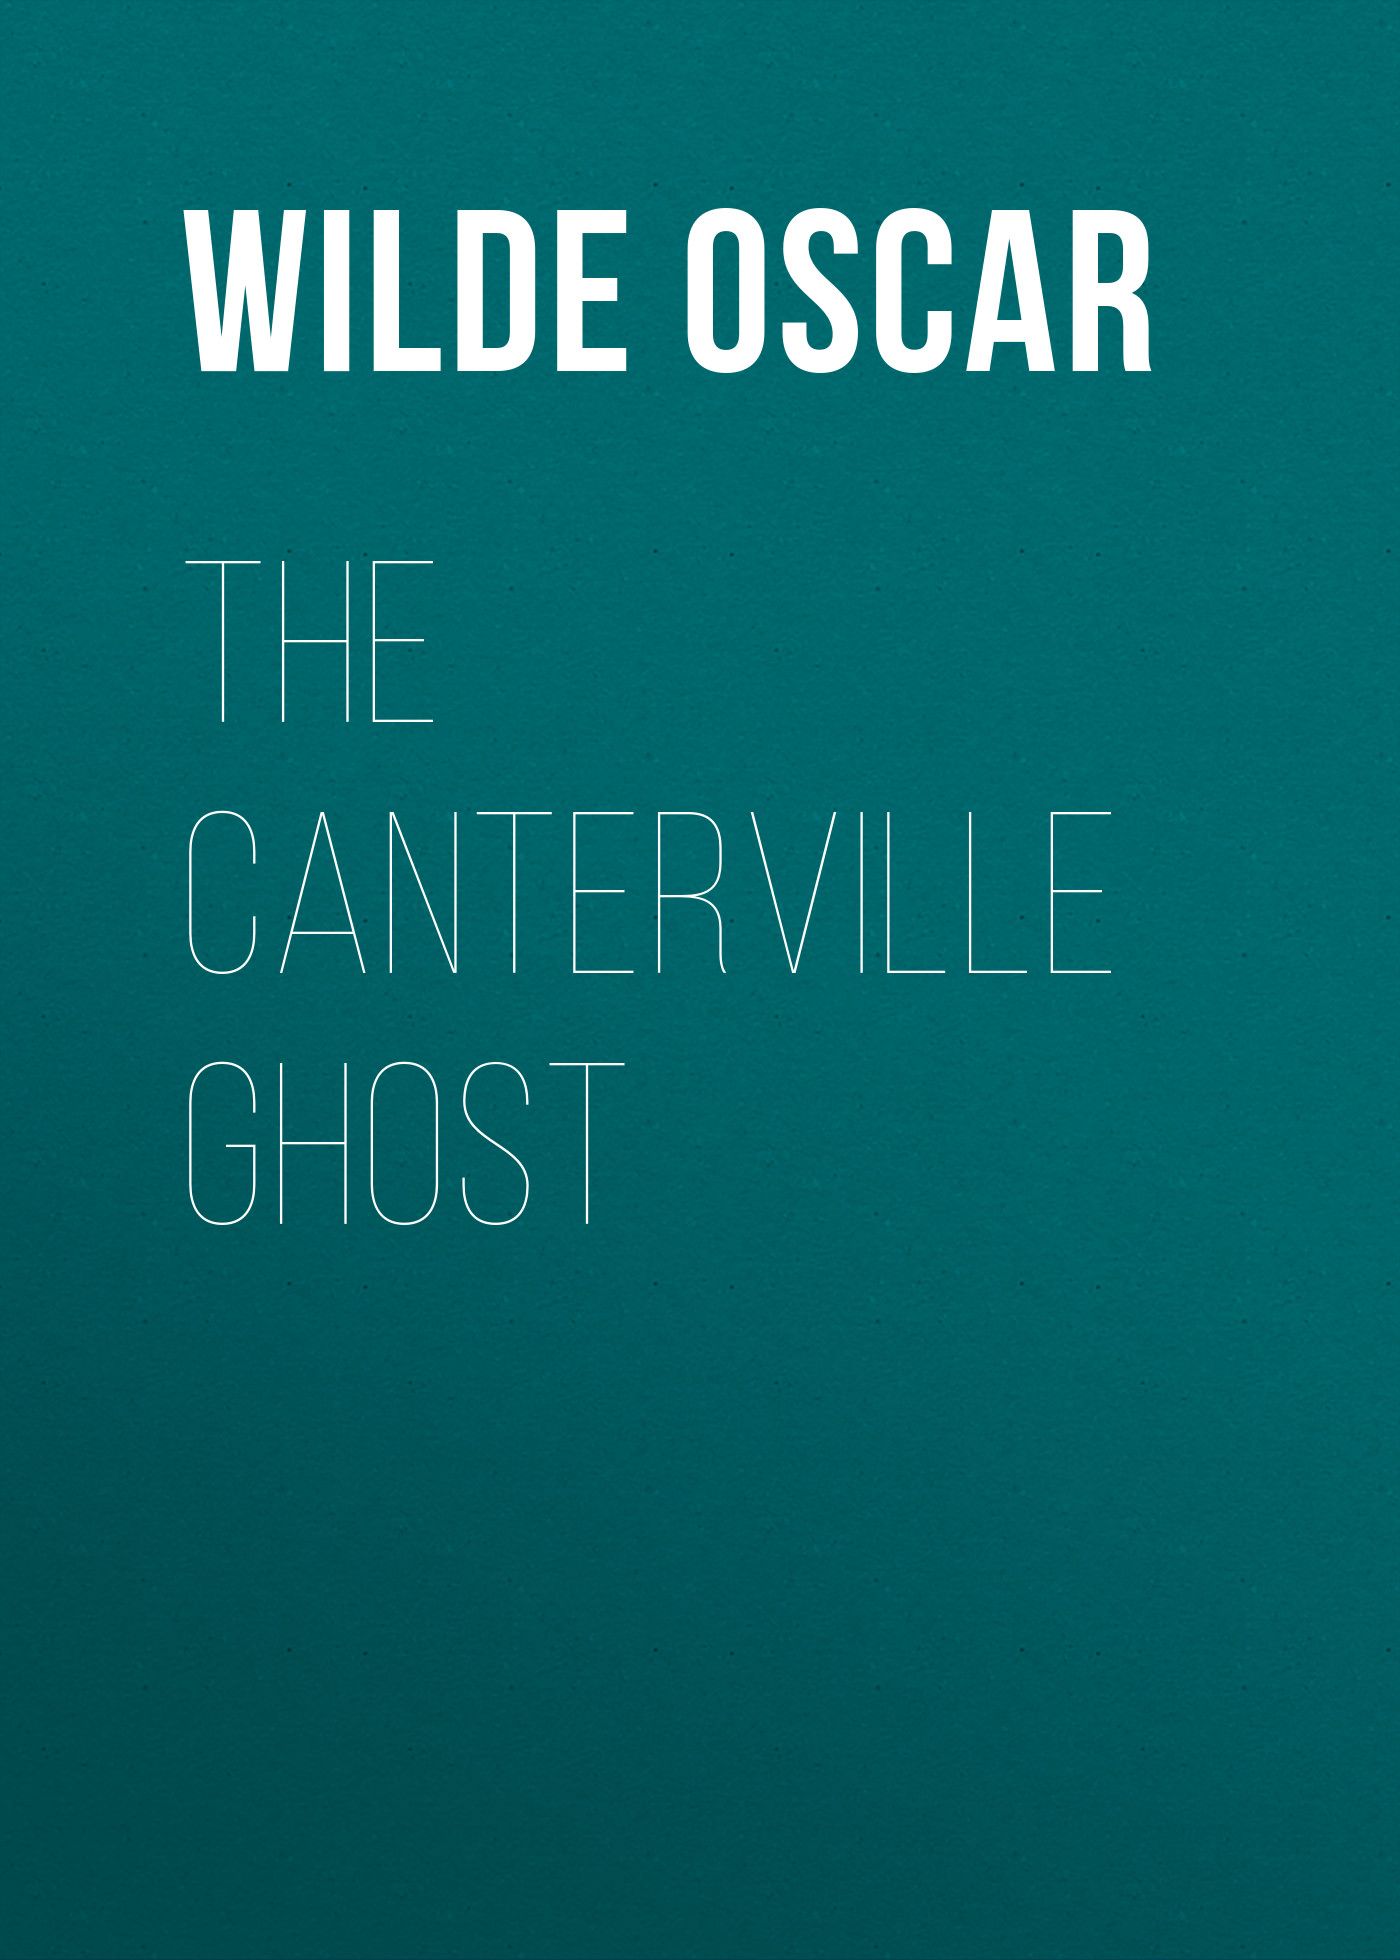 Книга The Canterville Ghost из серии , созданная Oscar Wilde, может относится к жанру Литература 19 века, Зарубежная классика. Стоимость электронной книги The Canterville Ghost с идентификатором 25560140 составляет 0 руб.